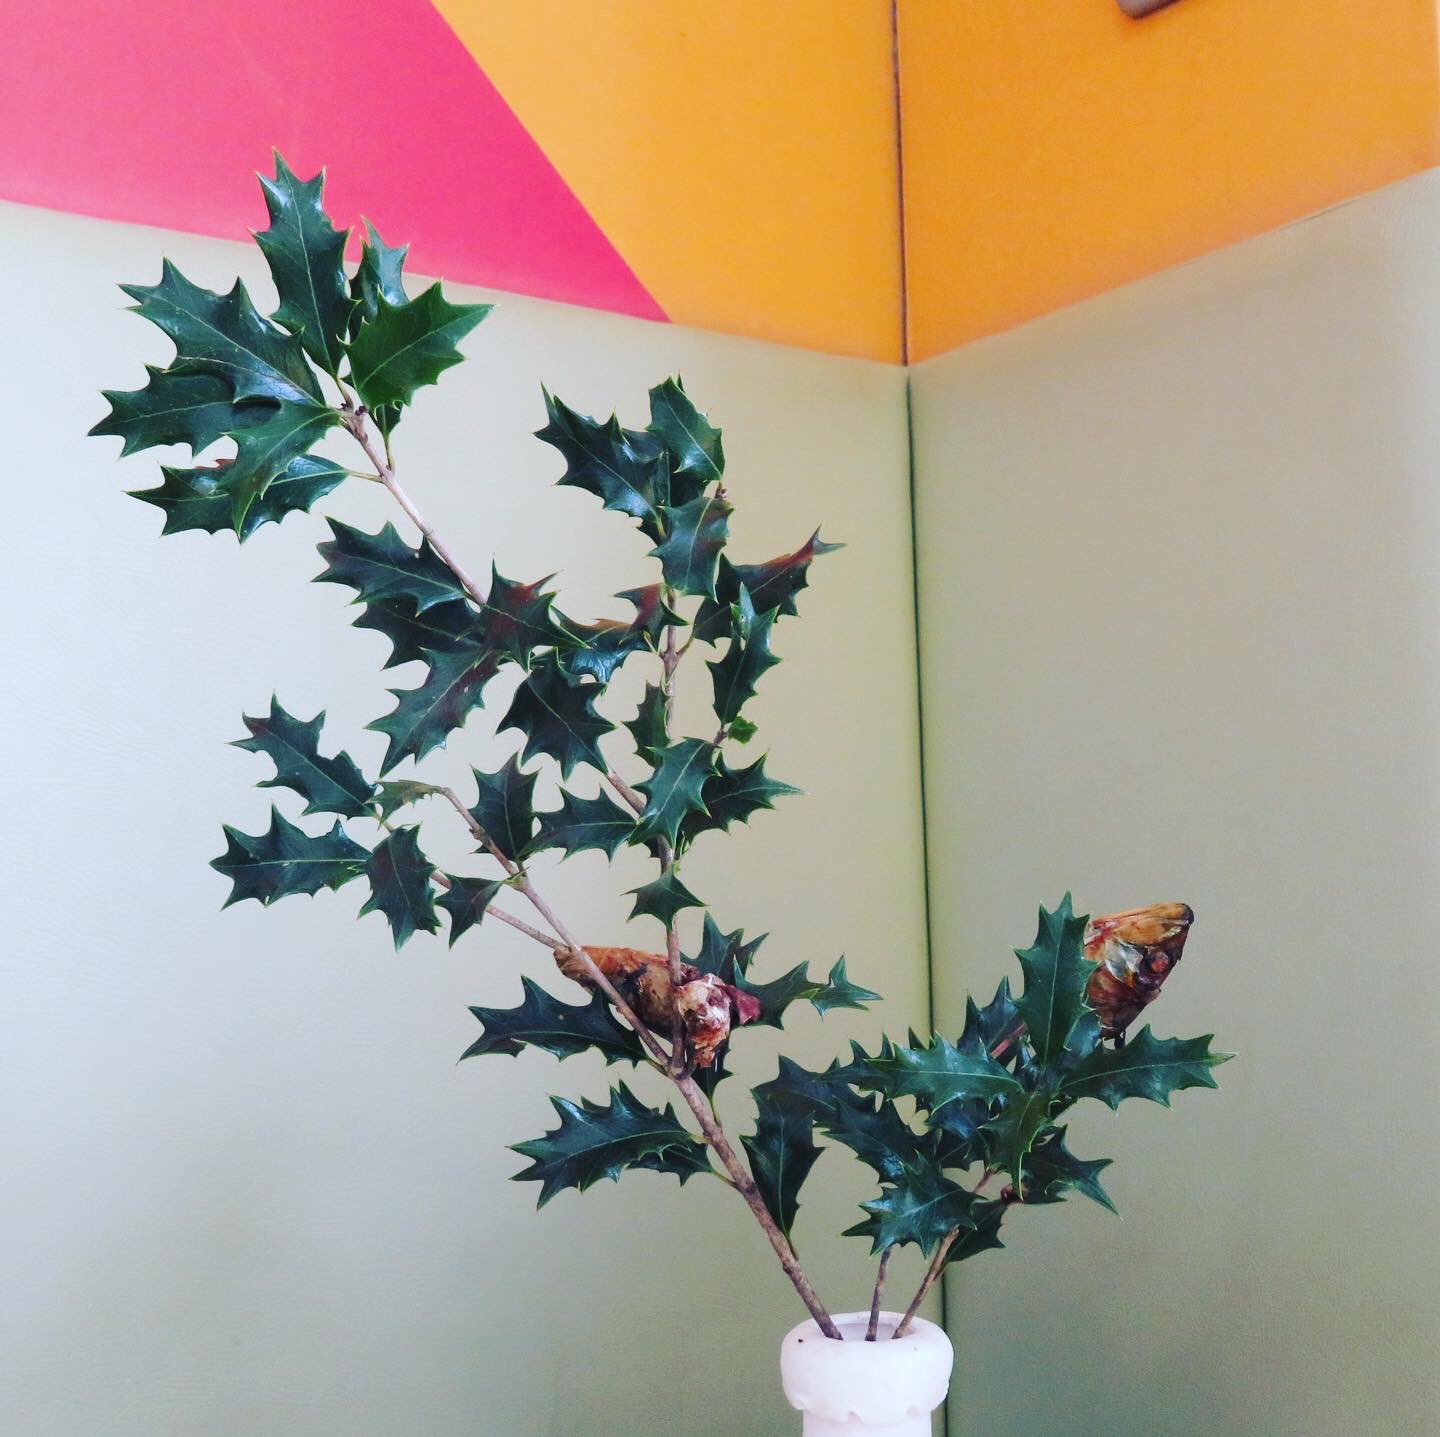 名古屋文化学園保育専門学校 公式 季節の変わり目である立春の前日に豆まきをして邪気を祓う節分行事 節分には伝統的な 柊鰯 ひいらぎいわし という飾りがあります 家の玄関先に飾る 葉のついた柊の枝に焼いた鰯の頭を刺したものです 柊鰯を